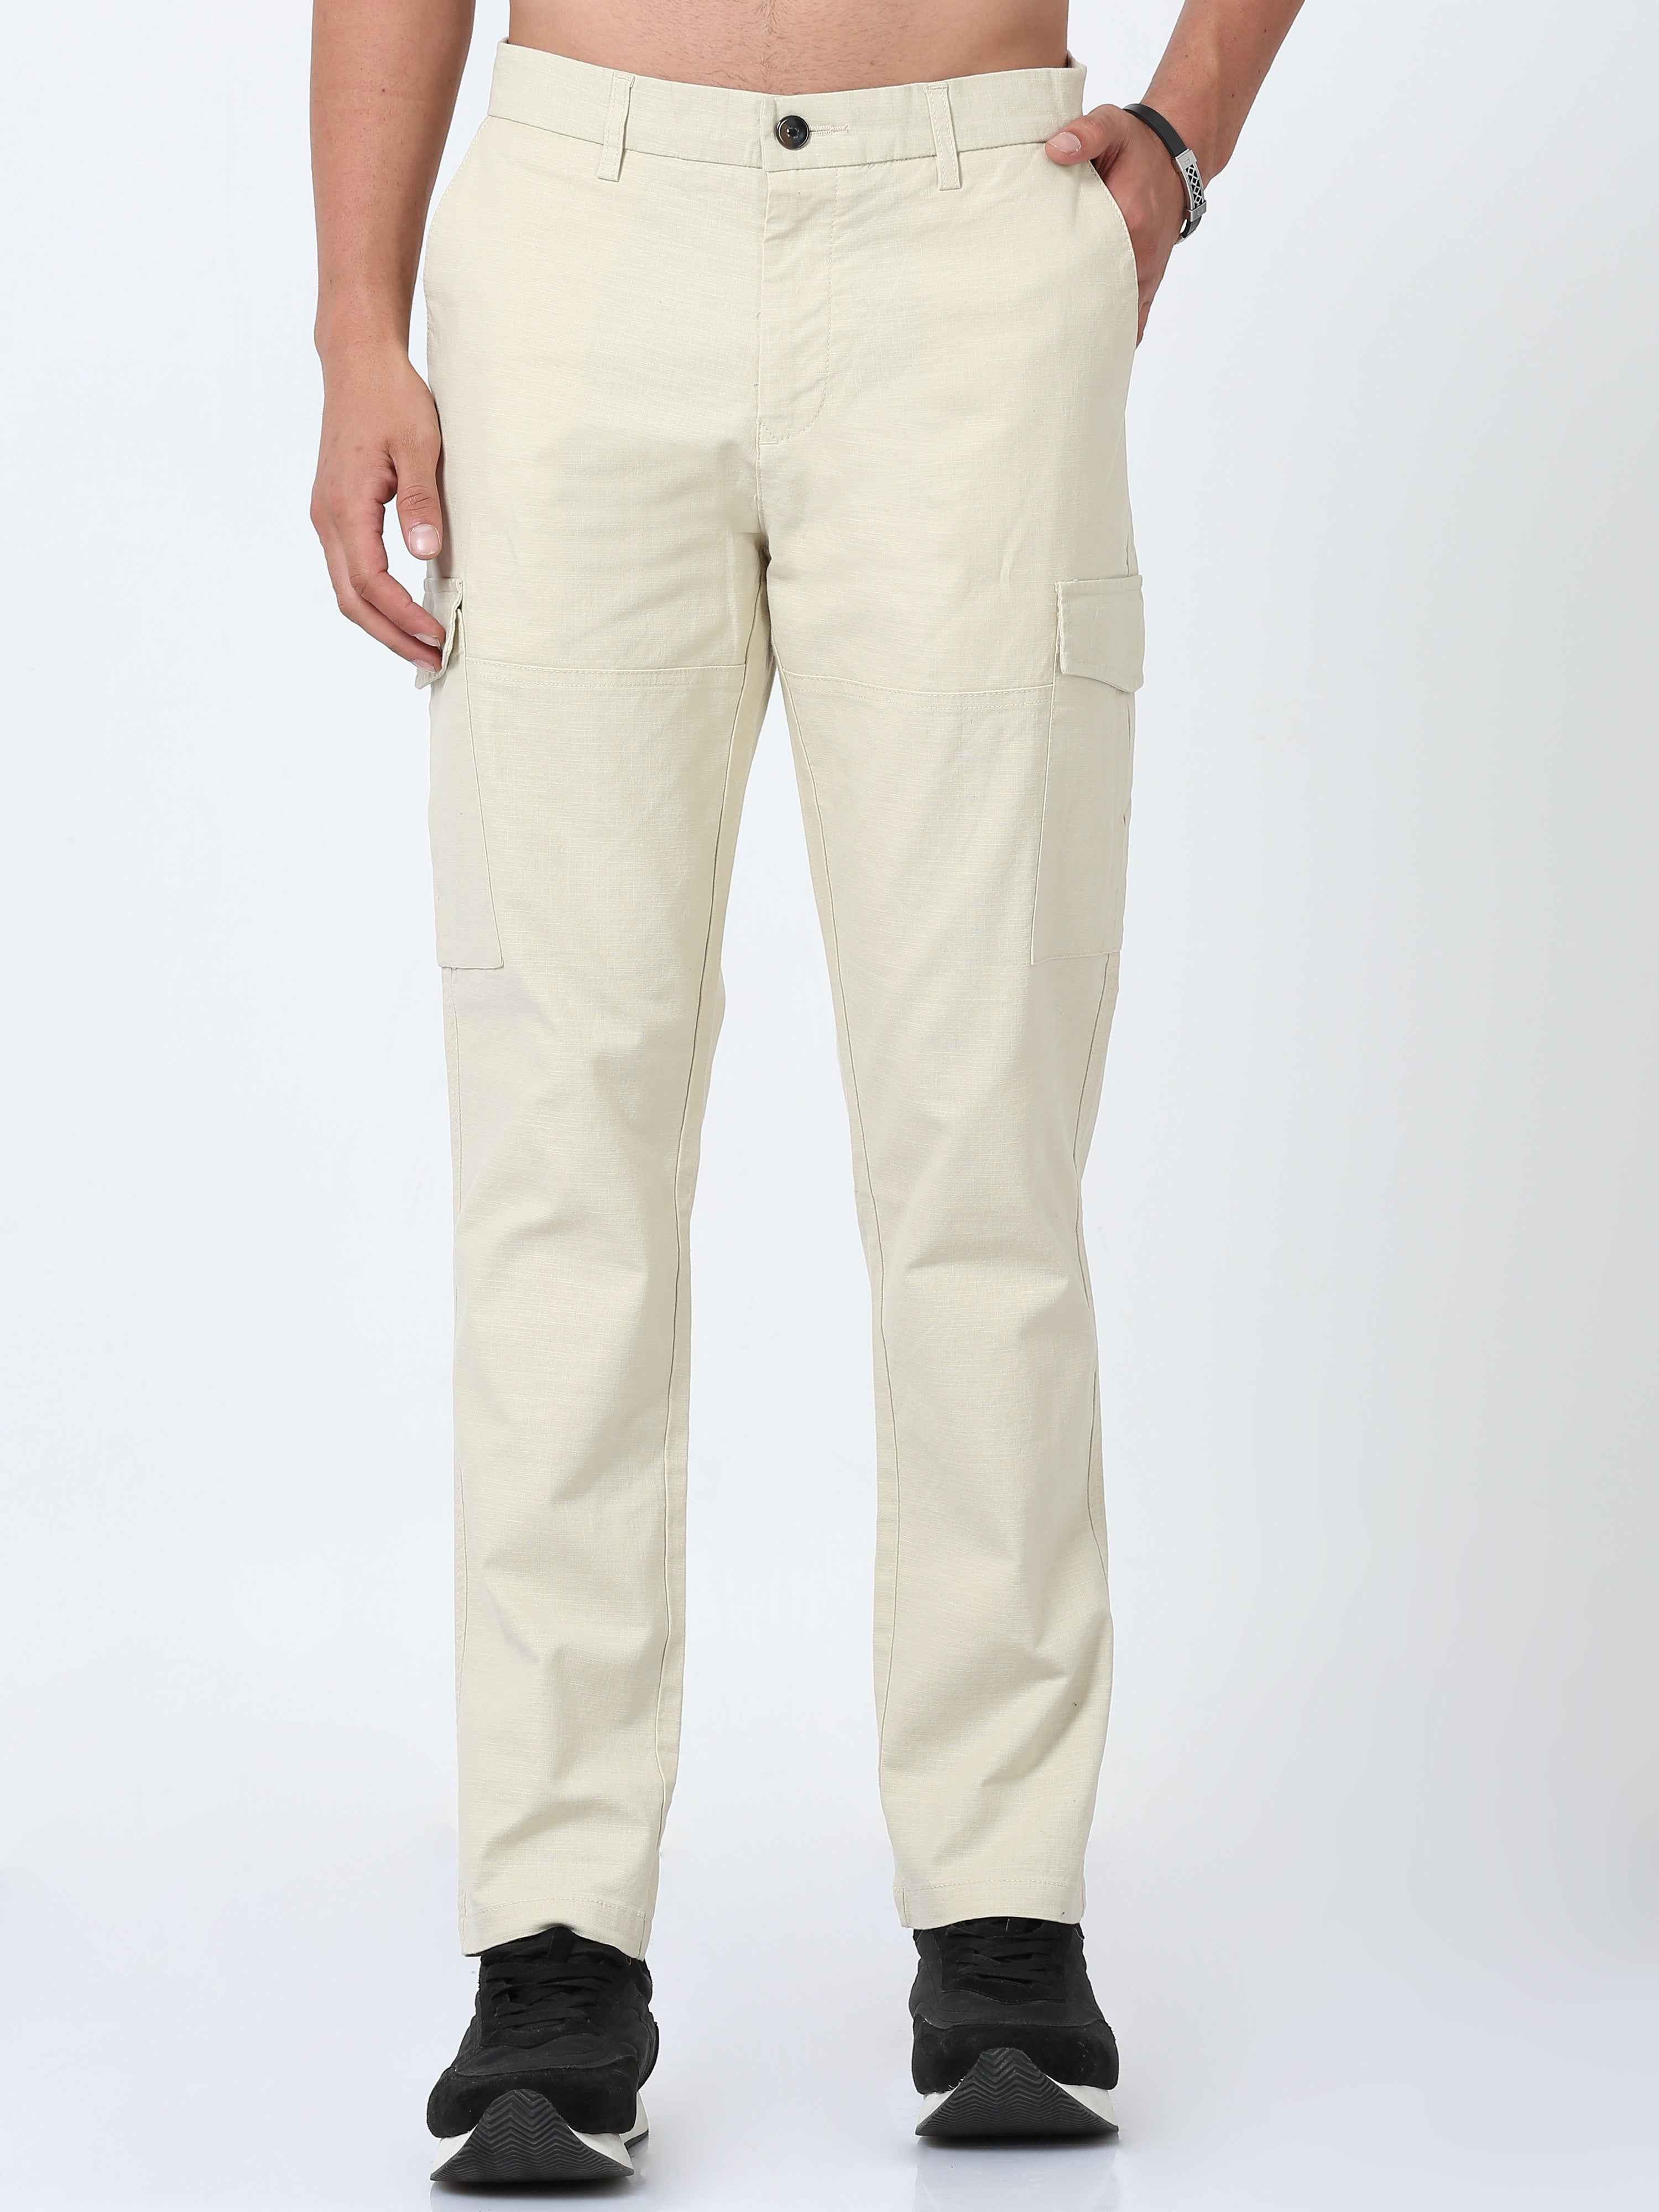 Cargo Pants- Cream Side Pocket Cargos for Men Online | Powerlook